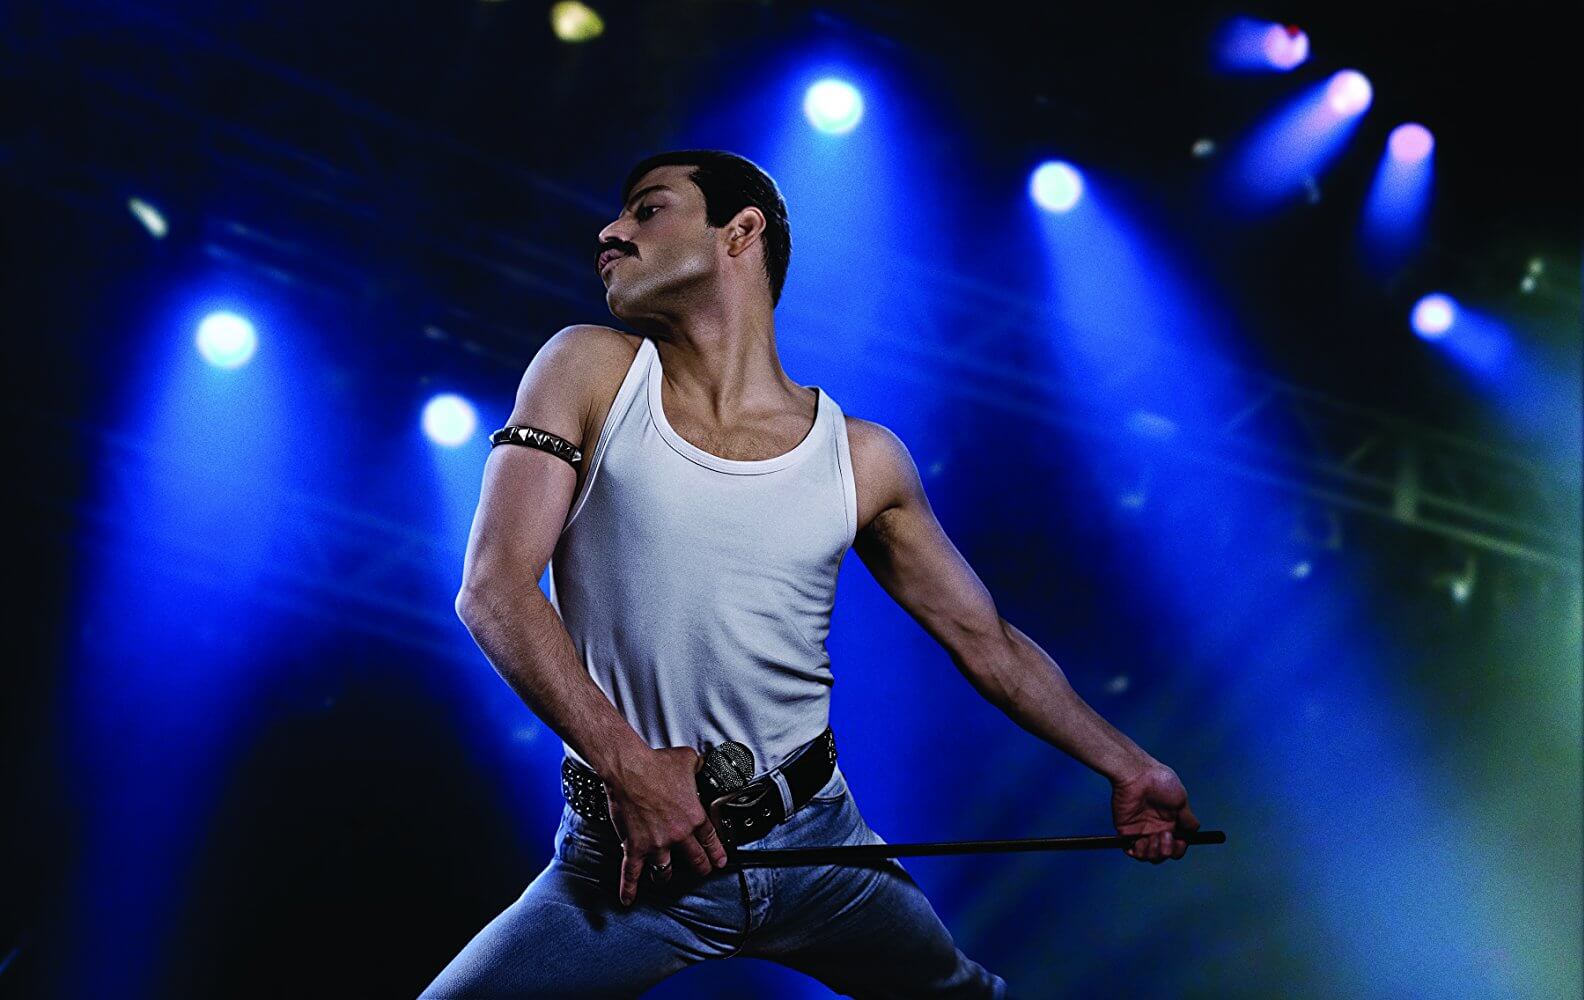 Bohemian Rhapsody | Fox promove exposição de figurinos do filme no Brasil